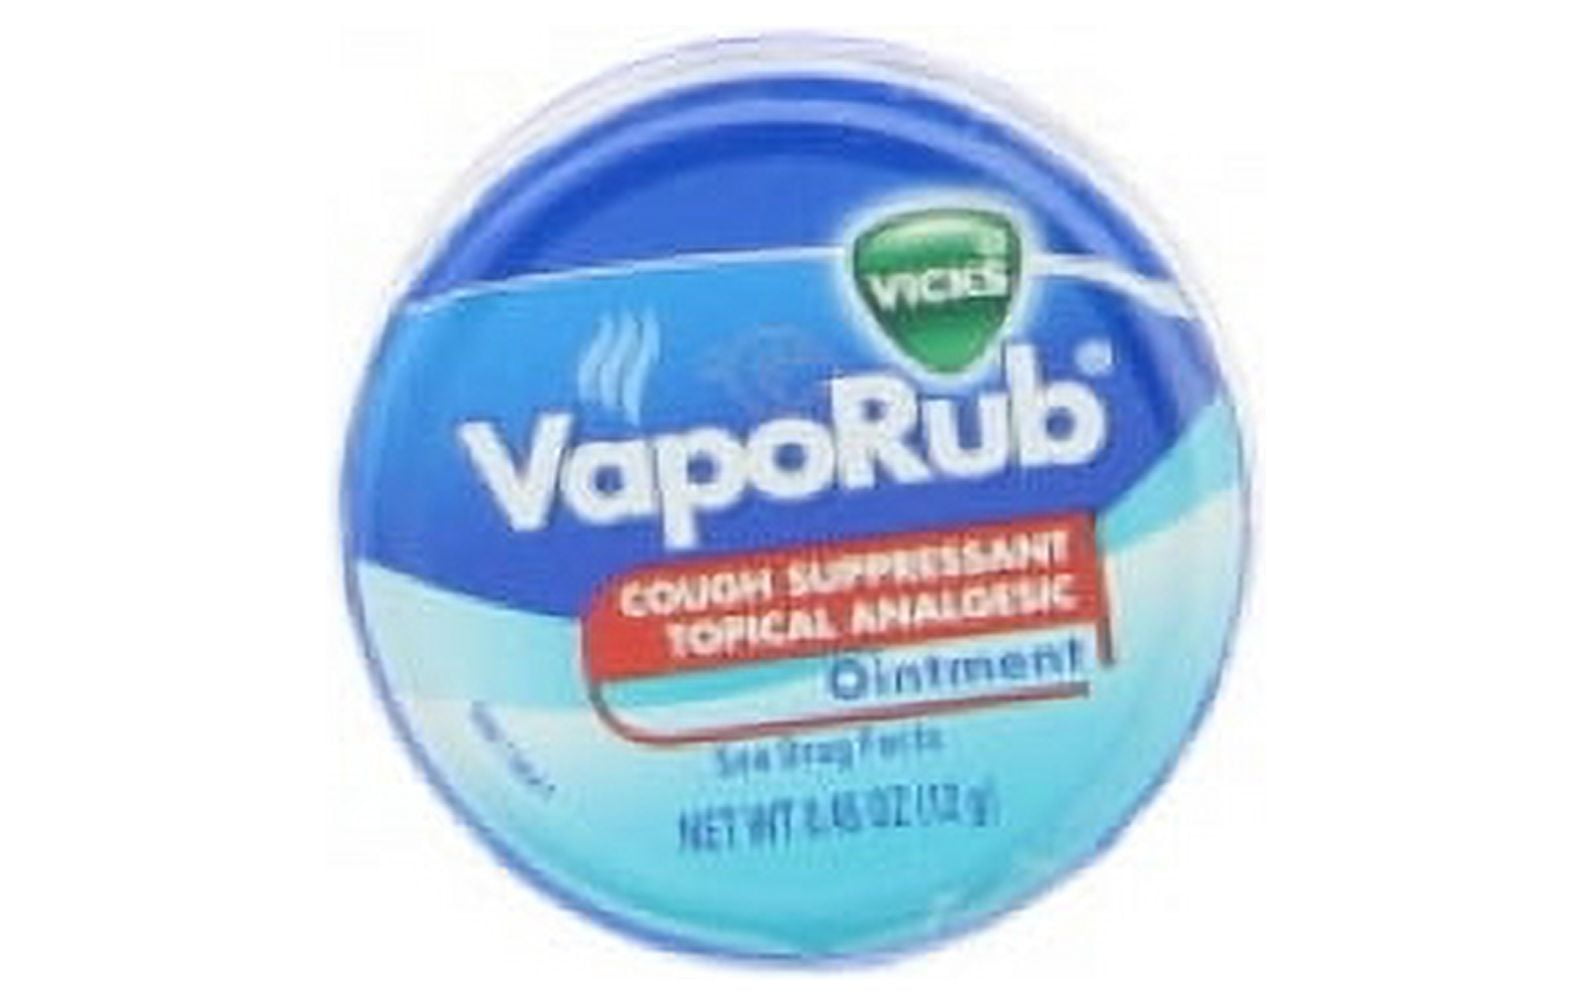 Vicks VapoRub, aroma de lavanda, supresor de la tos, frote tópico en el  pecho y ungüento analgésico, vaporizadores Vicks medicados, alivio de la  tos